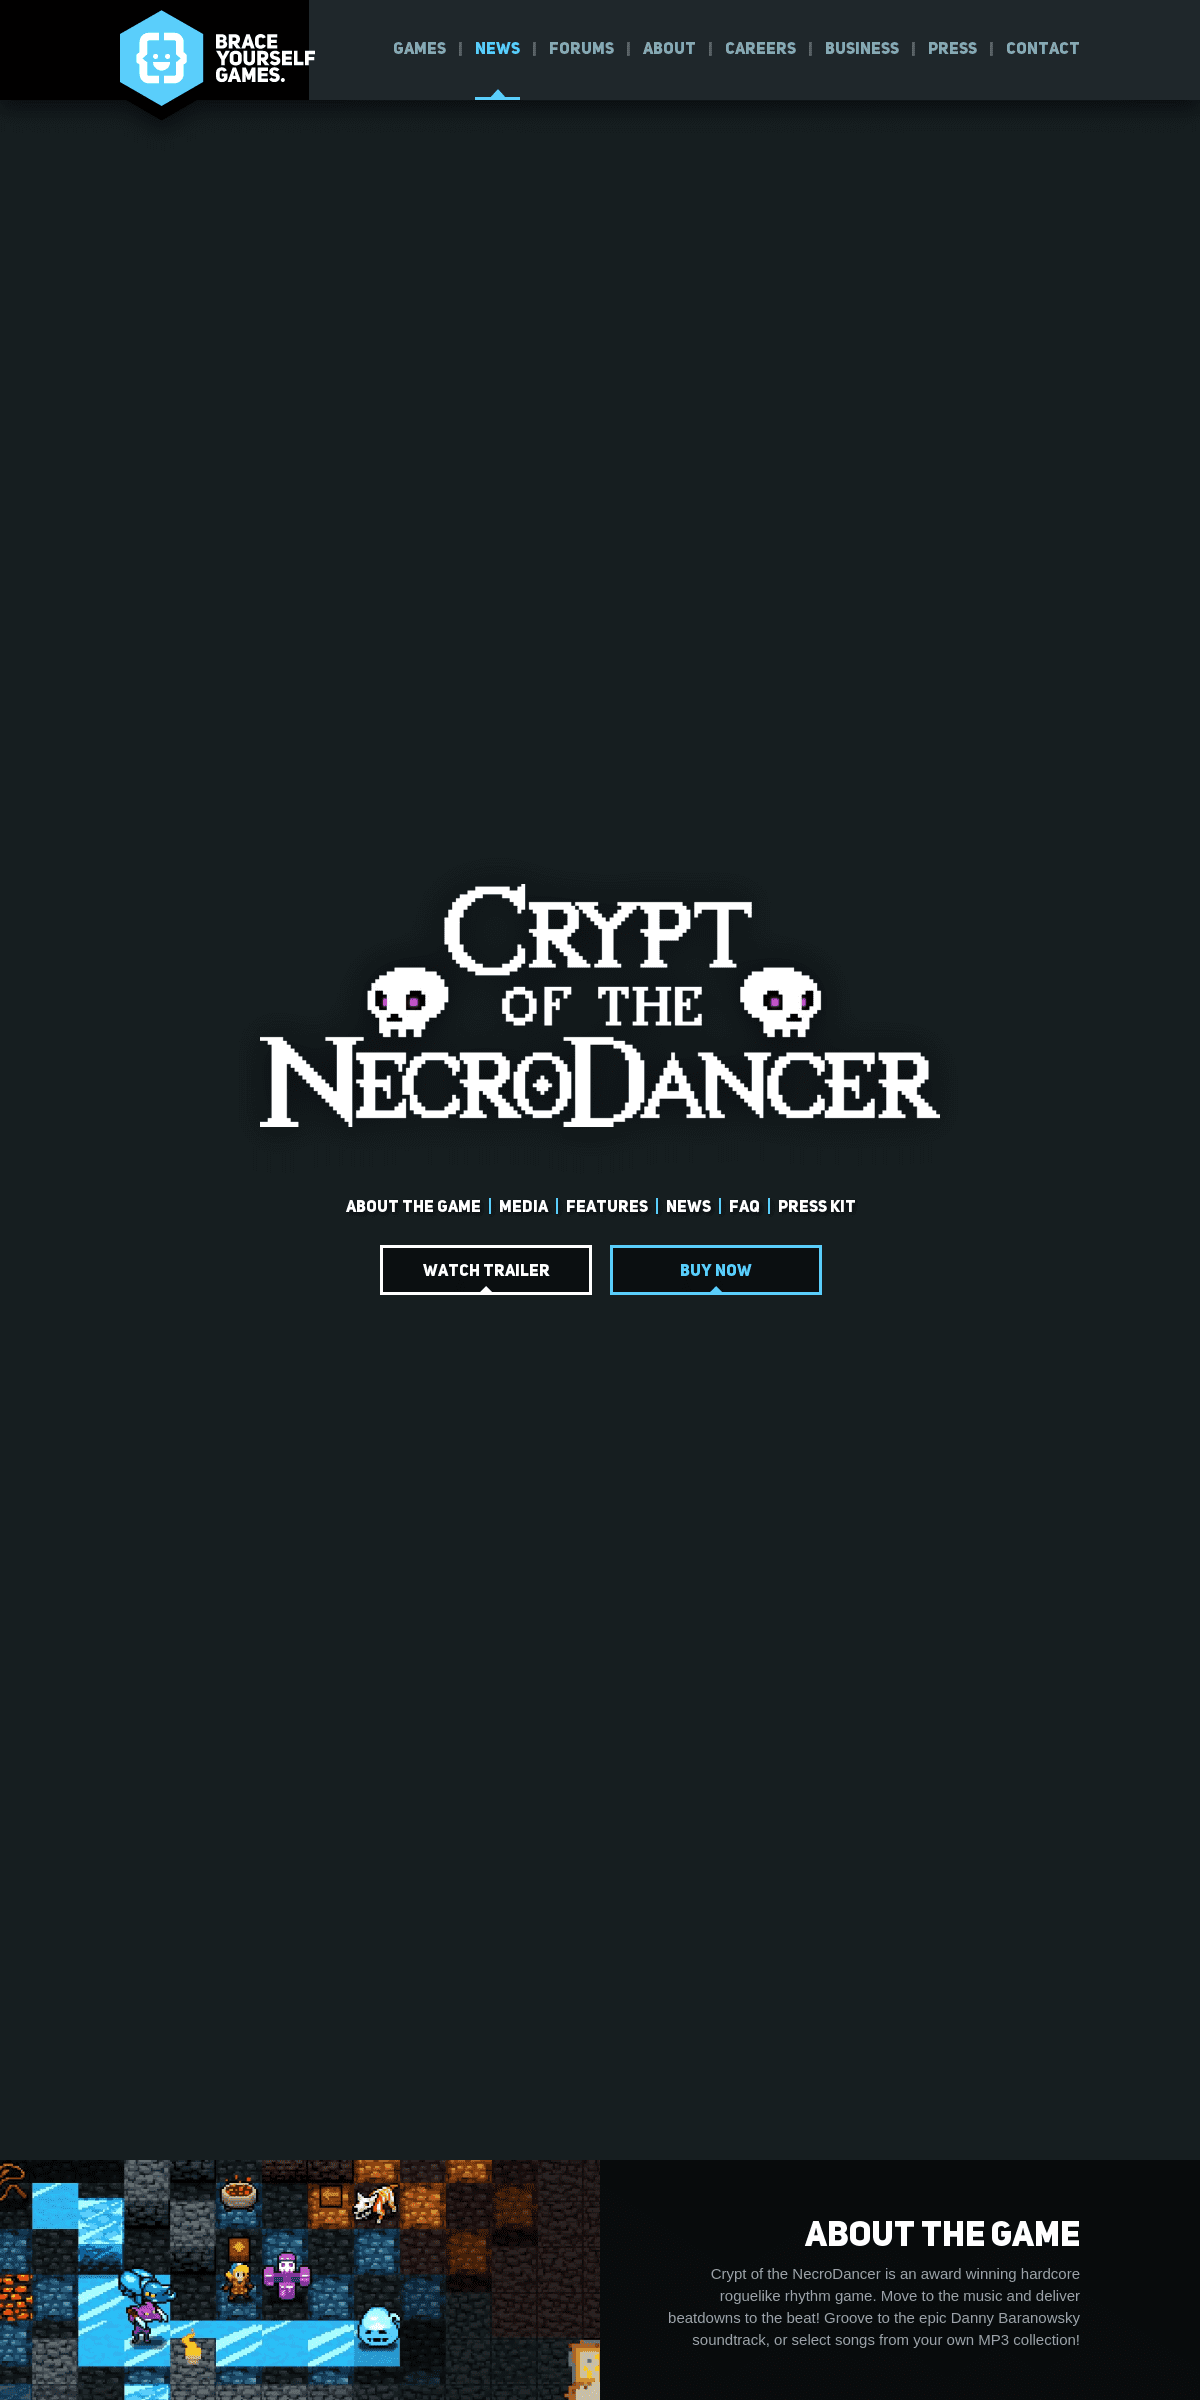 A complete backup of necrodancer.com